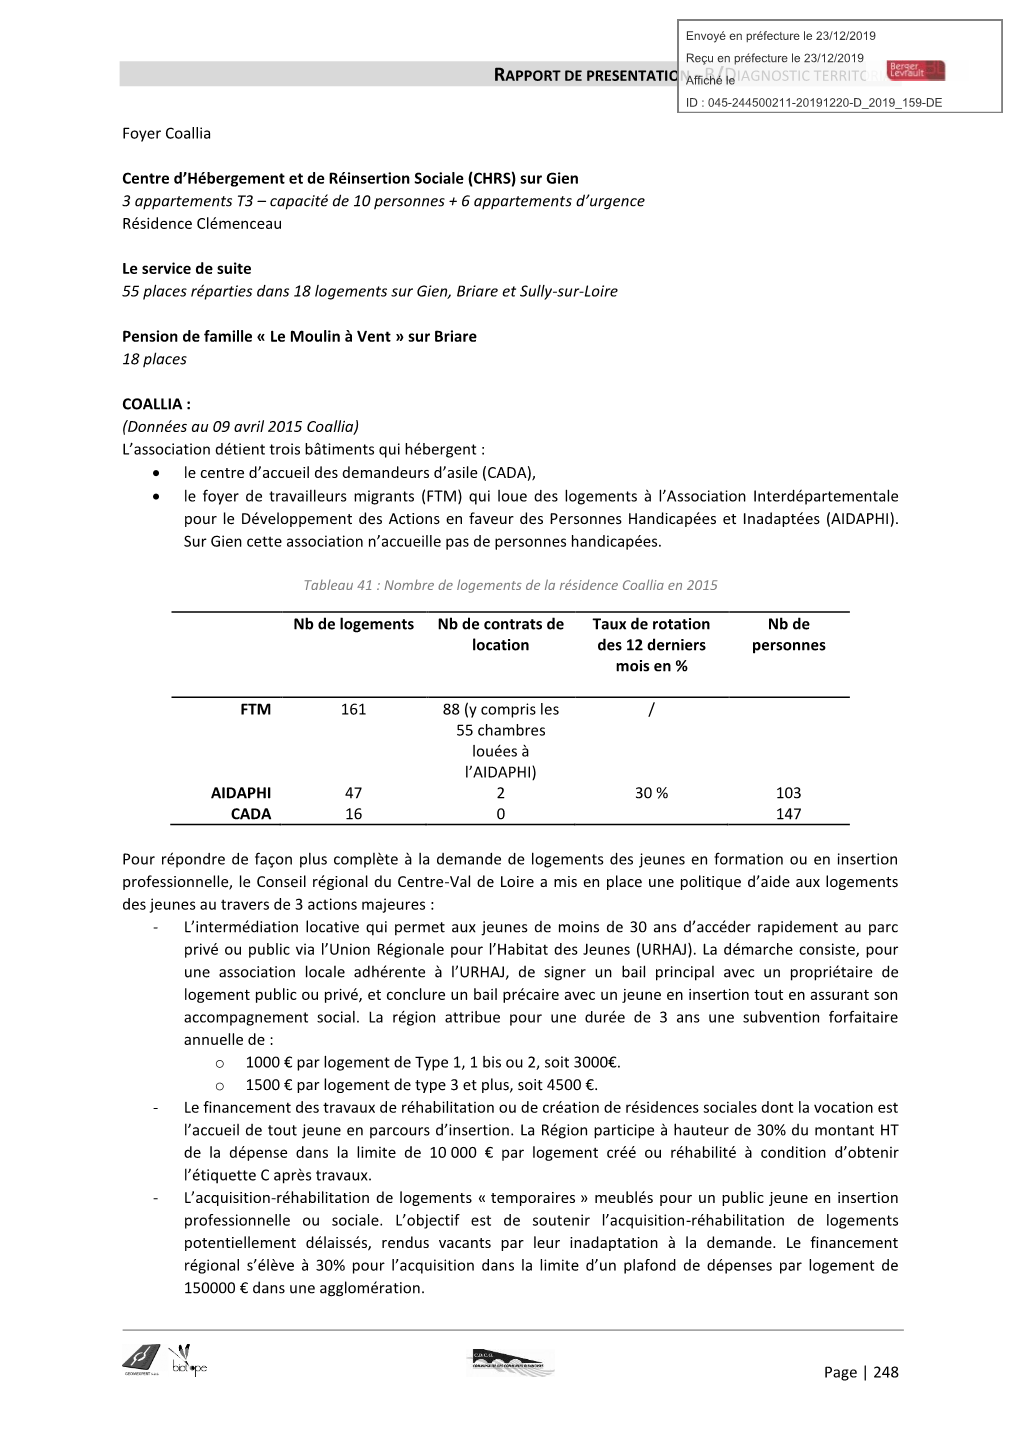 Rapport De Presentation - B/Diagnostic Territorial